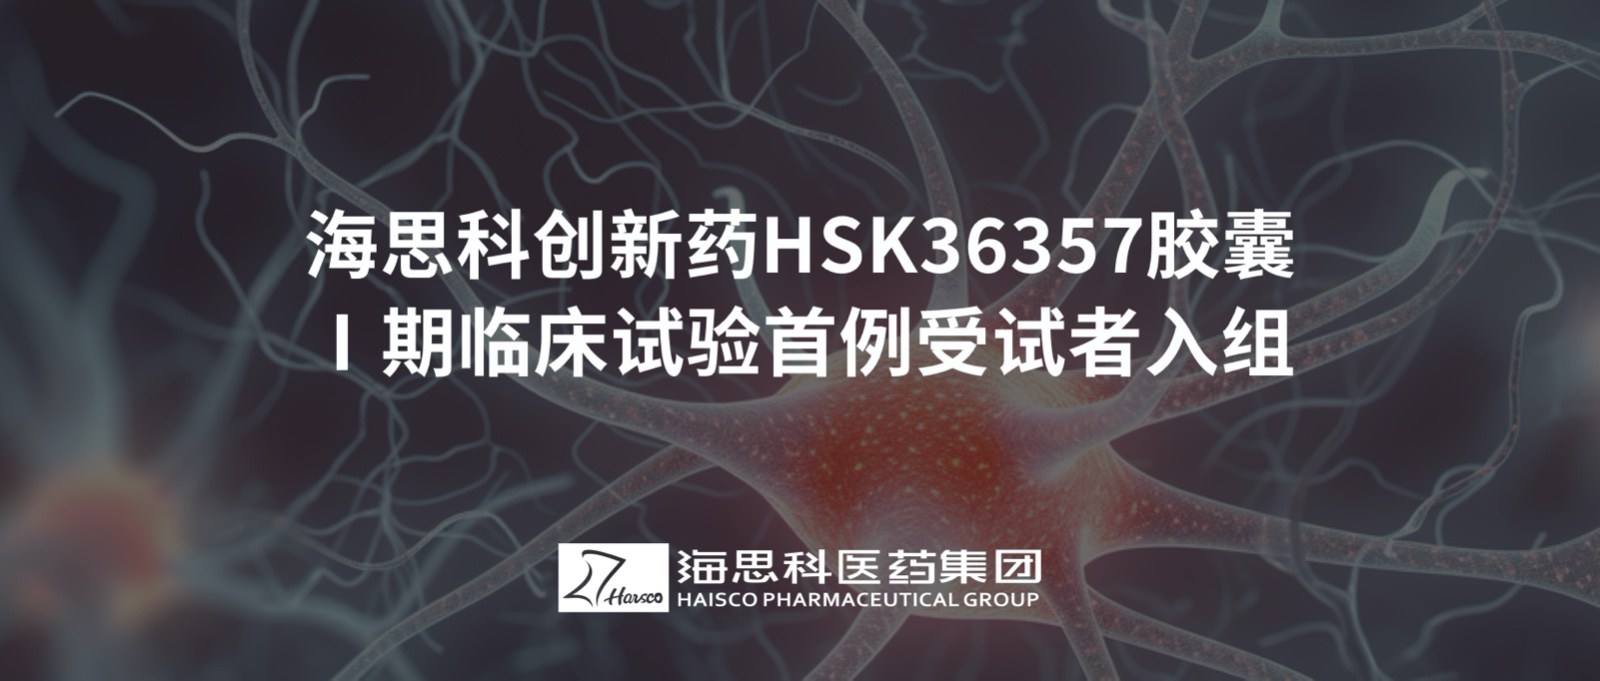 老金沙9170登录创新药HSK36357胶囊Ⅰ期临床试验首例受试者入组